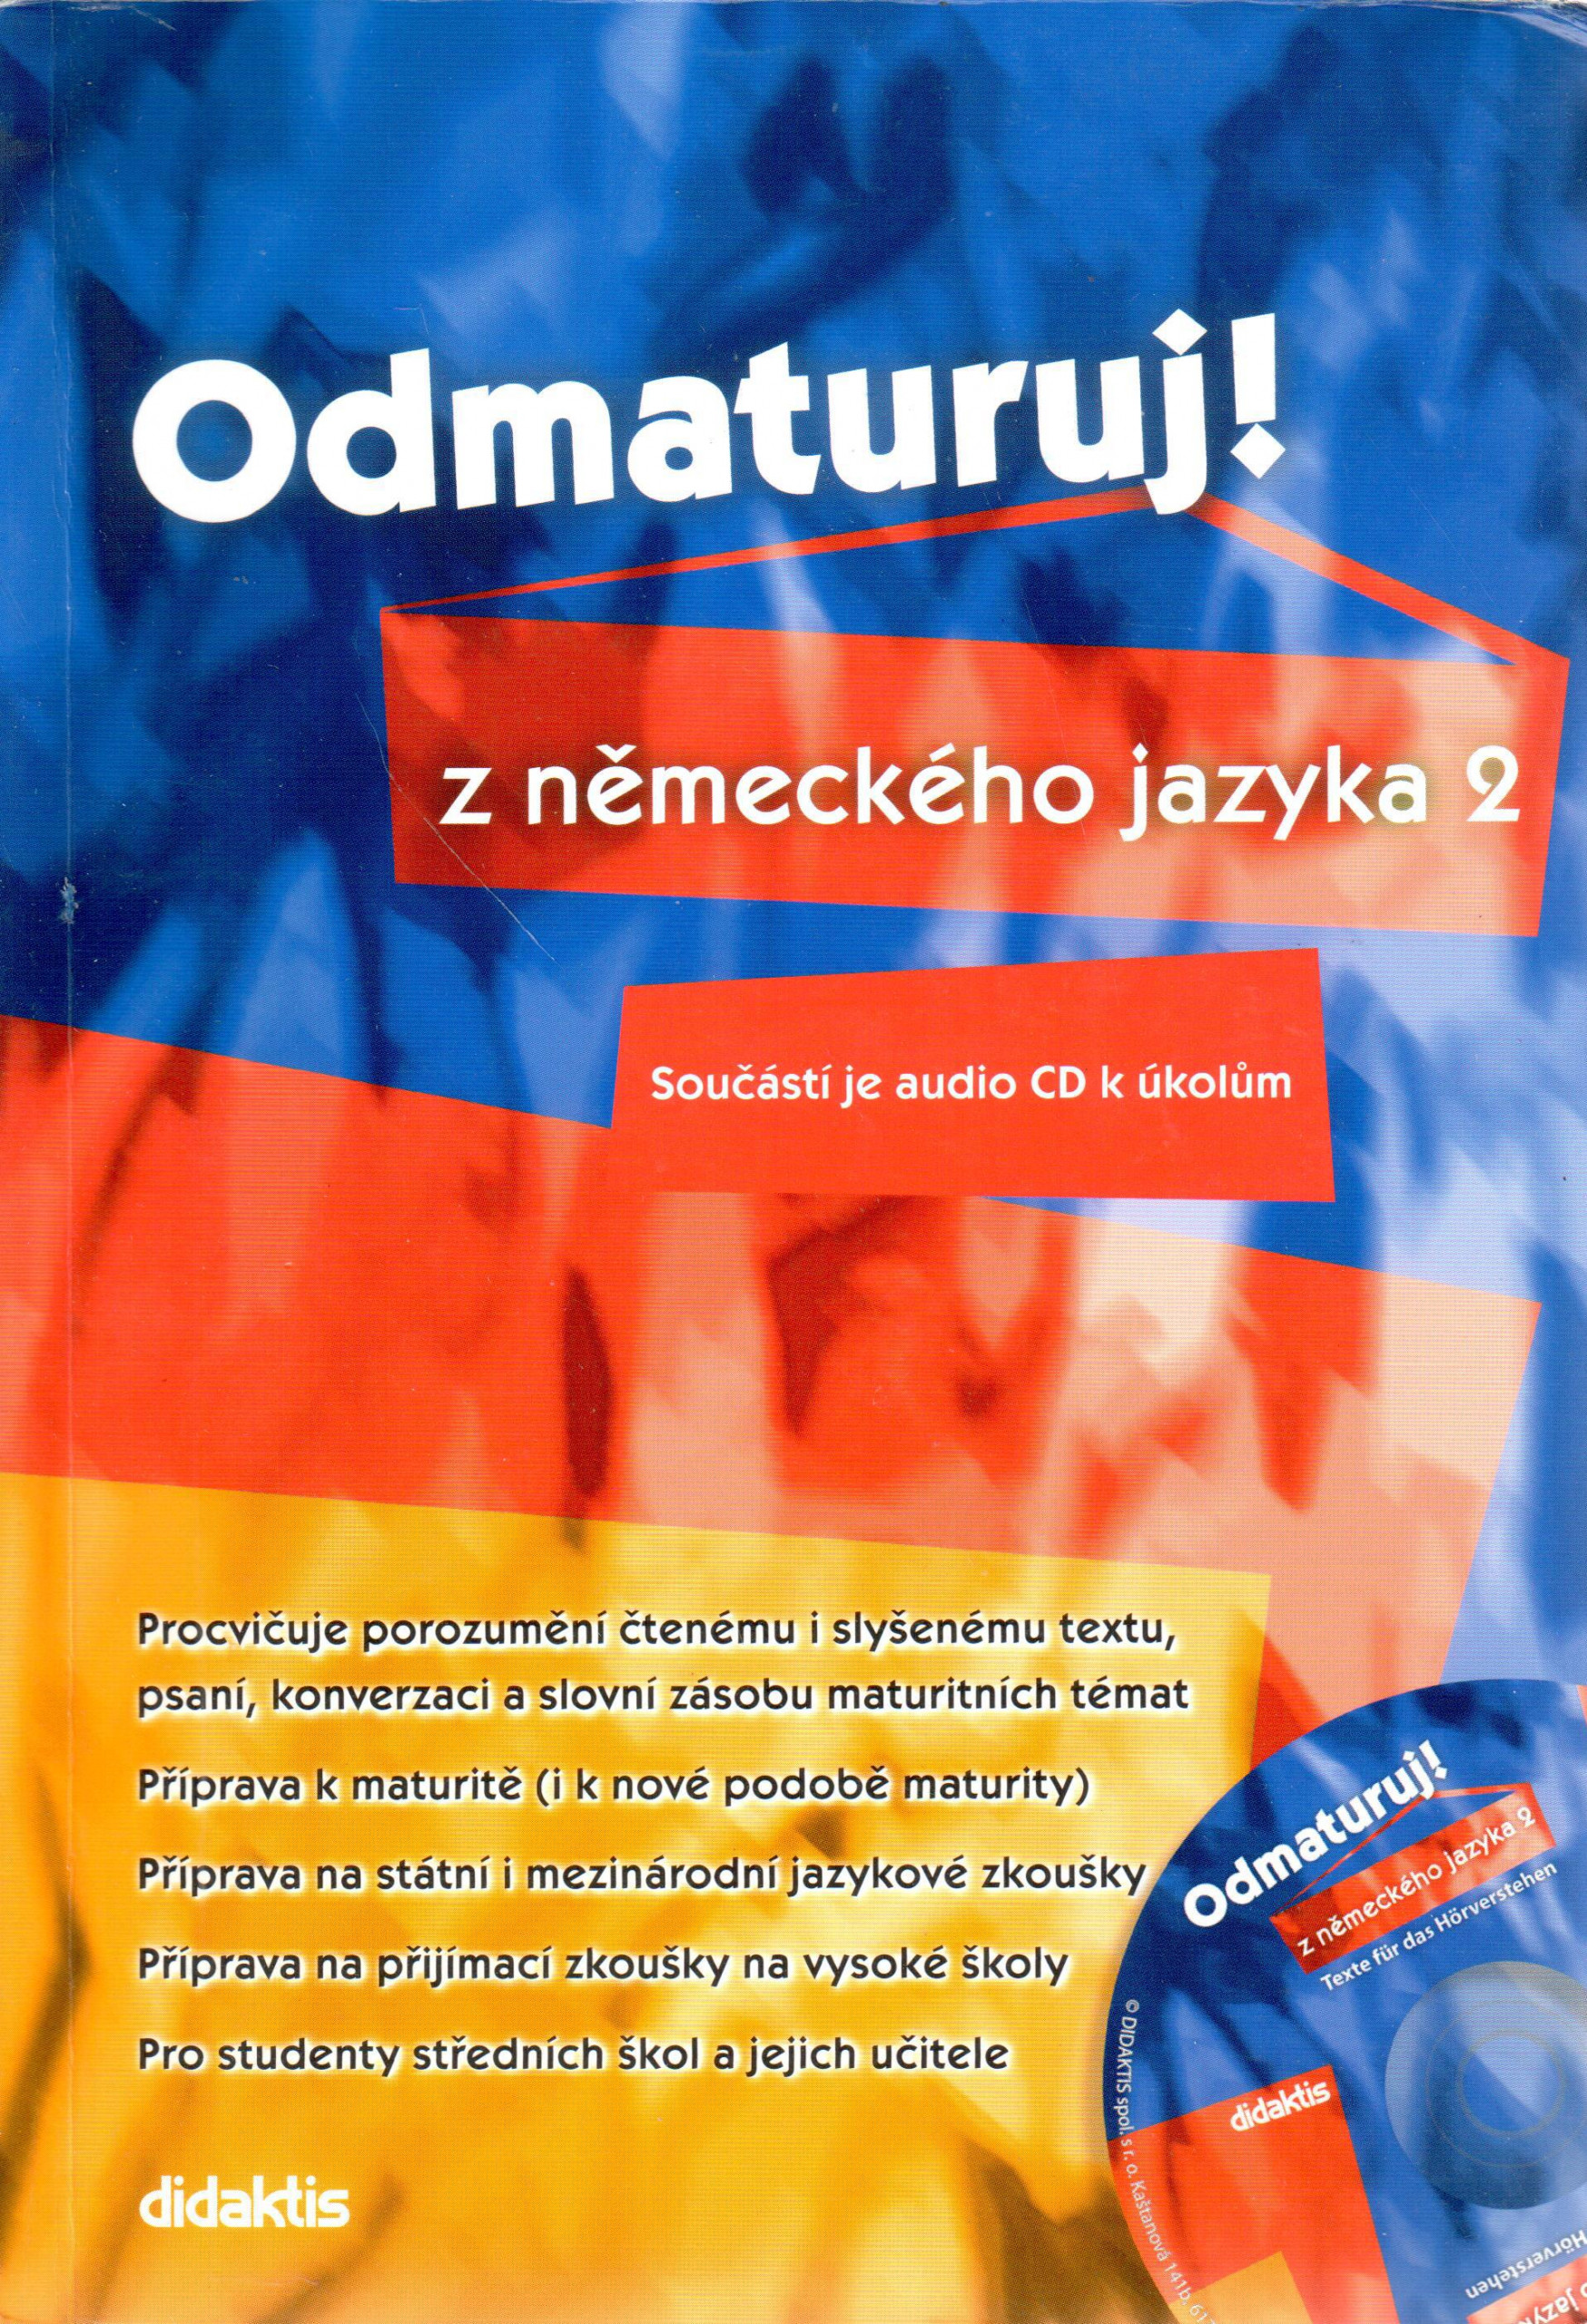 Odmaturuj! z německého jazyka 2 (+CD) - Náhled učebnice